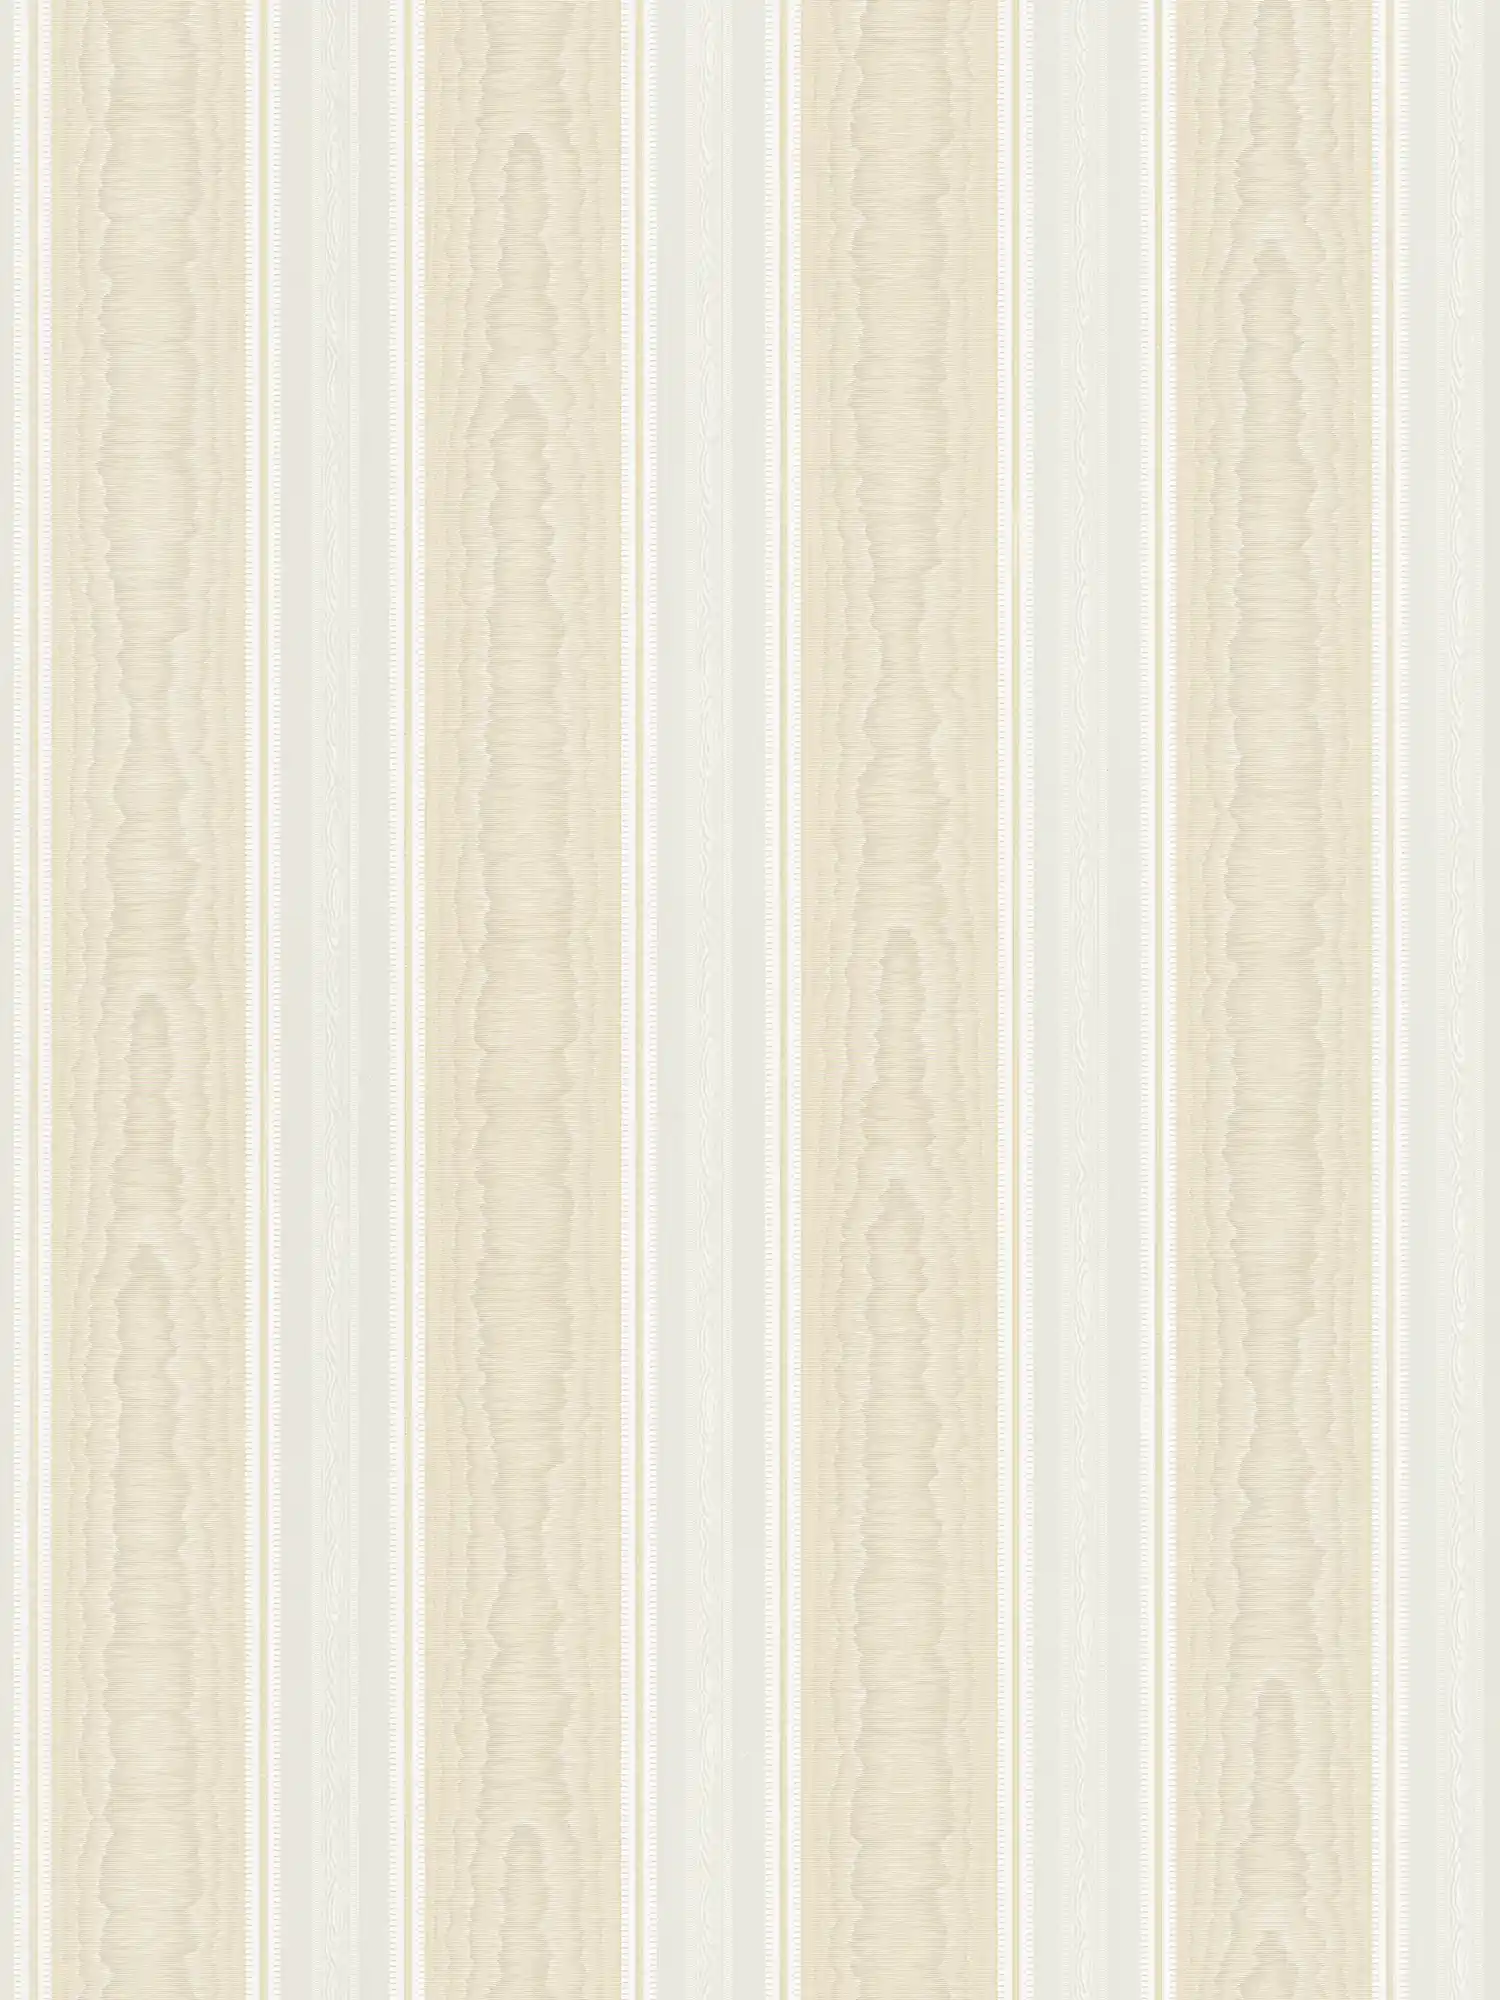 Papier peint à rayures avec effet moiré soie - beige, blanc
